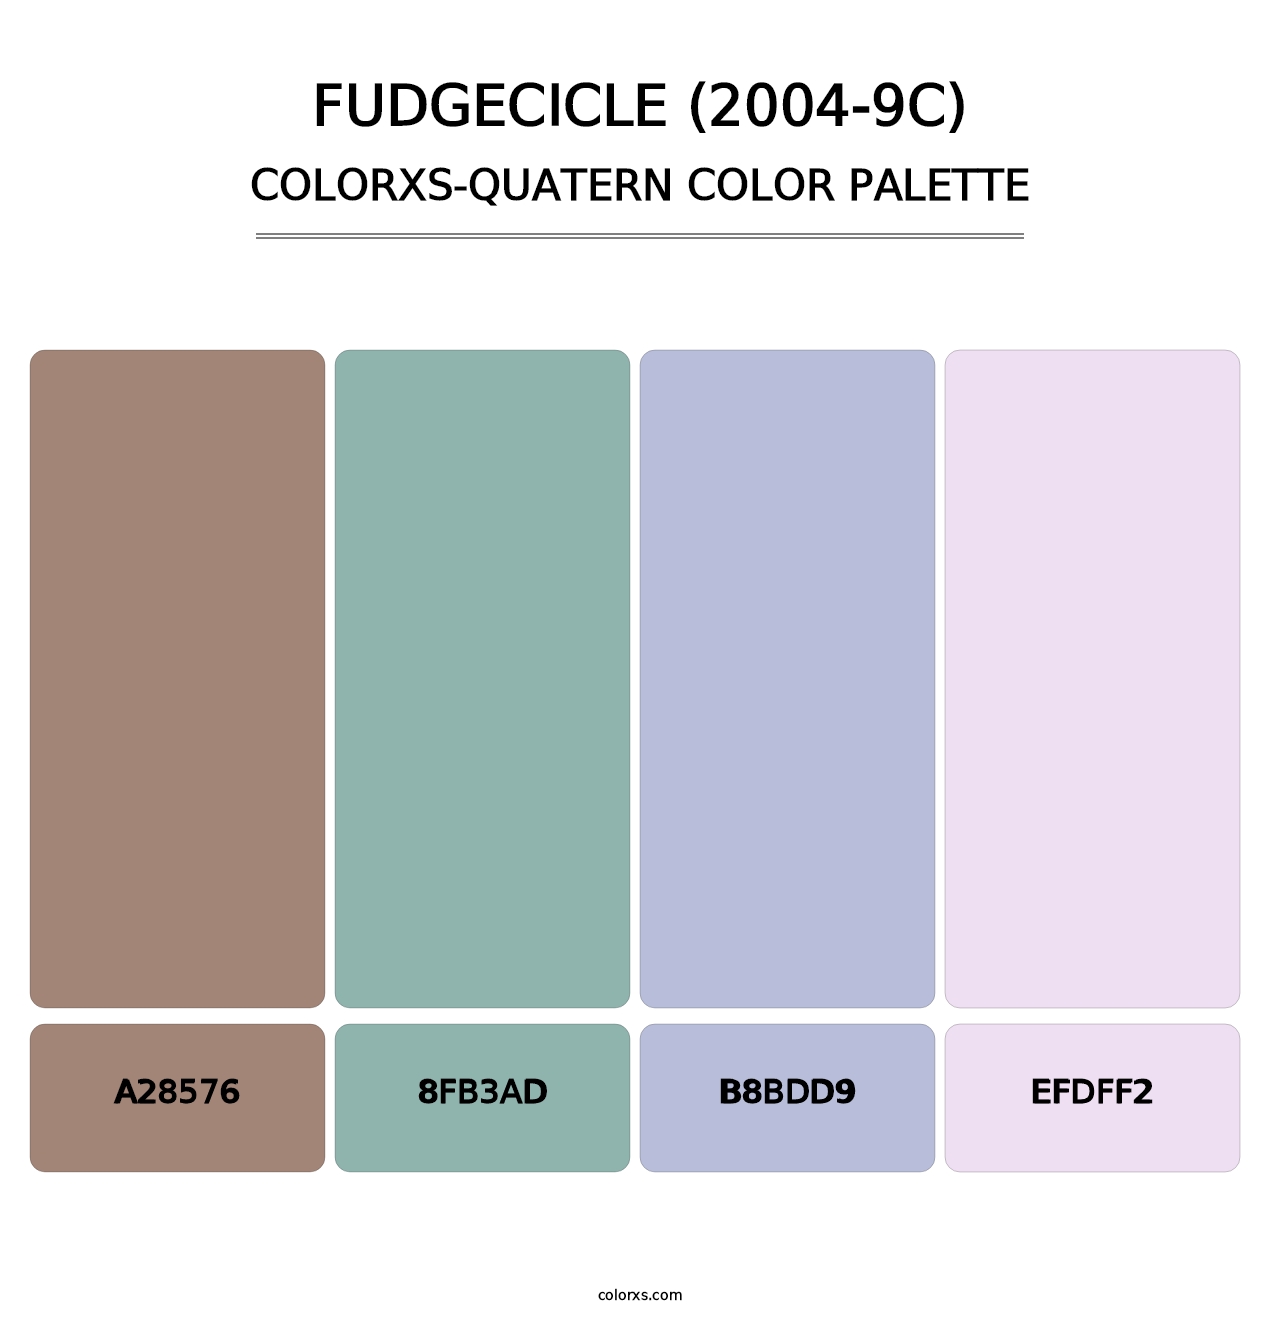 Fudgecicle (2004-9C) - Colorxs Quatern Palette